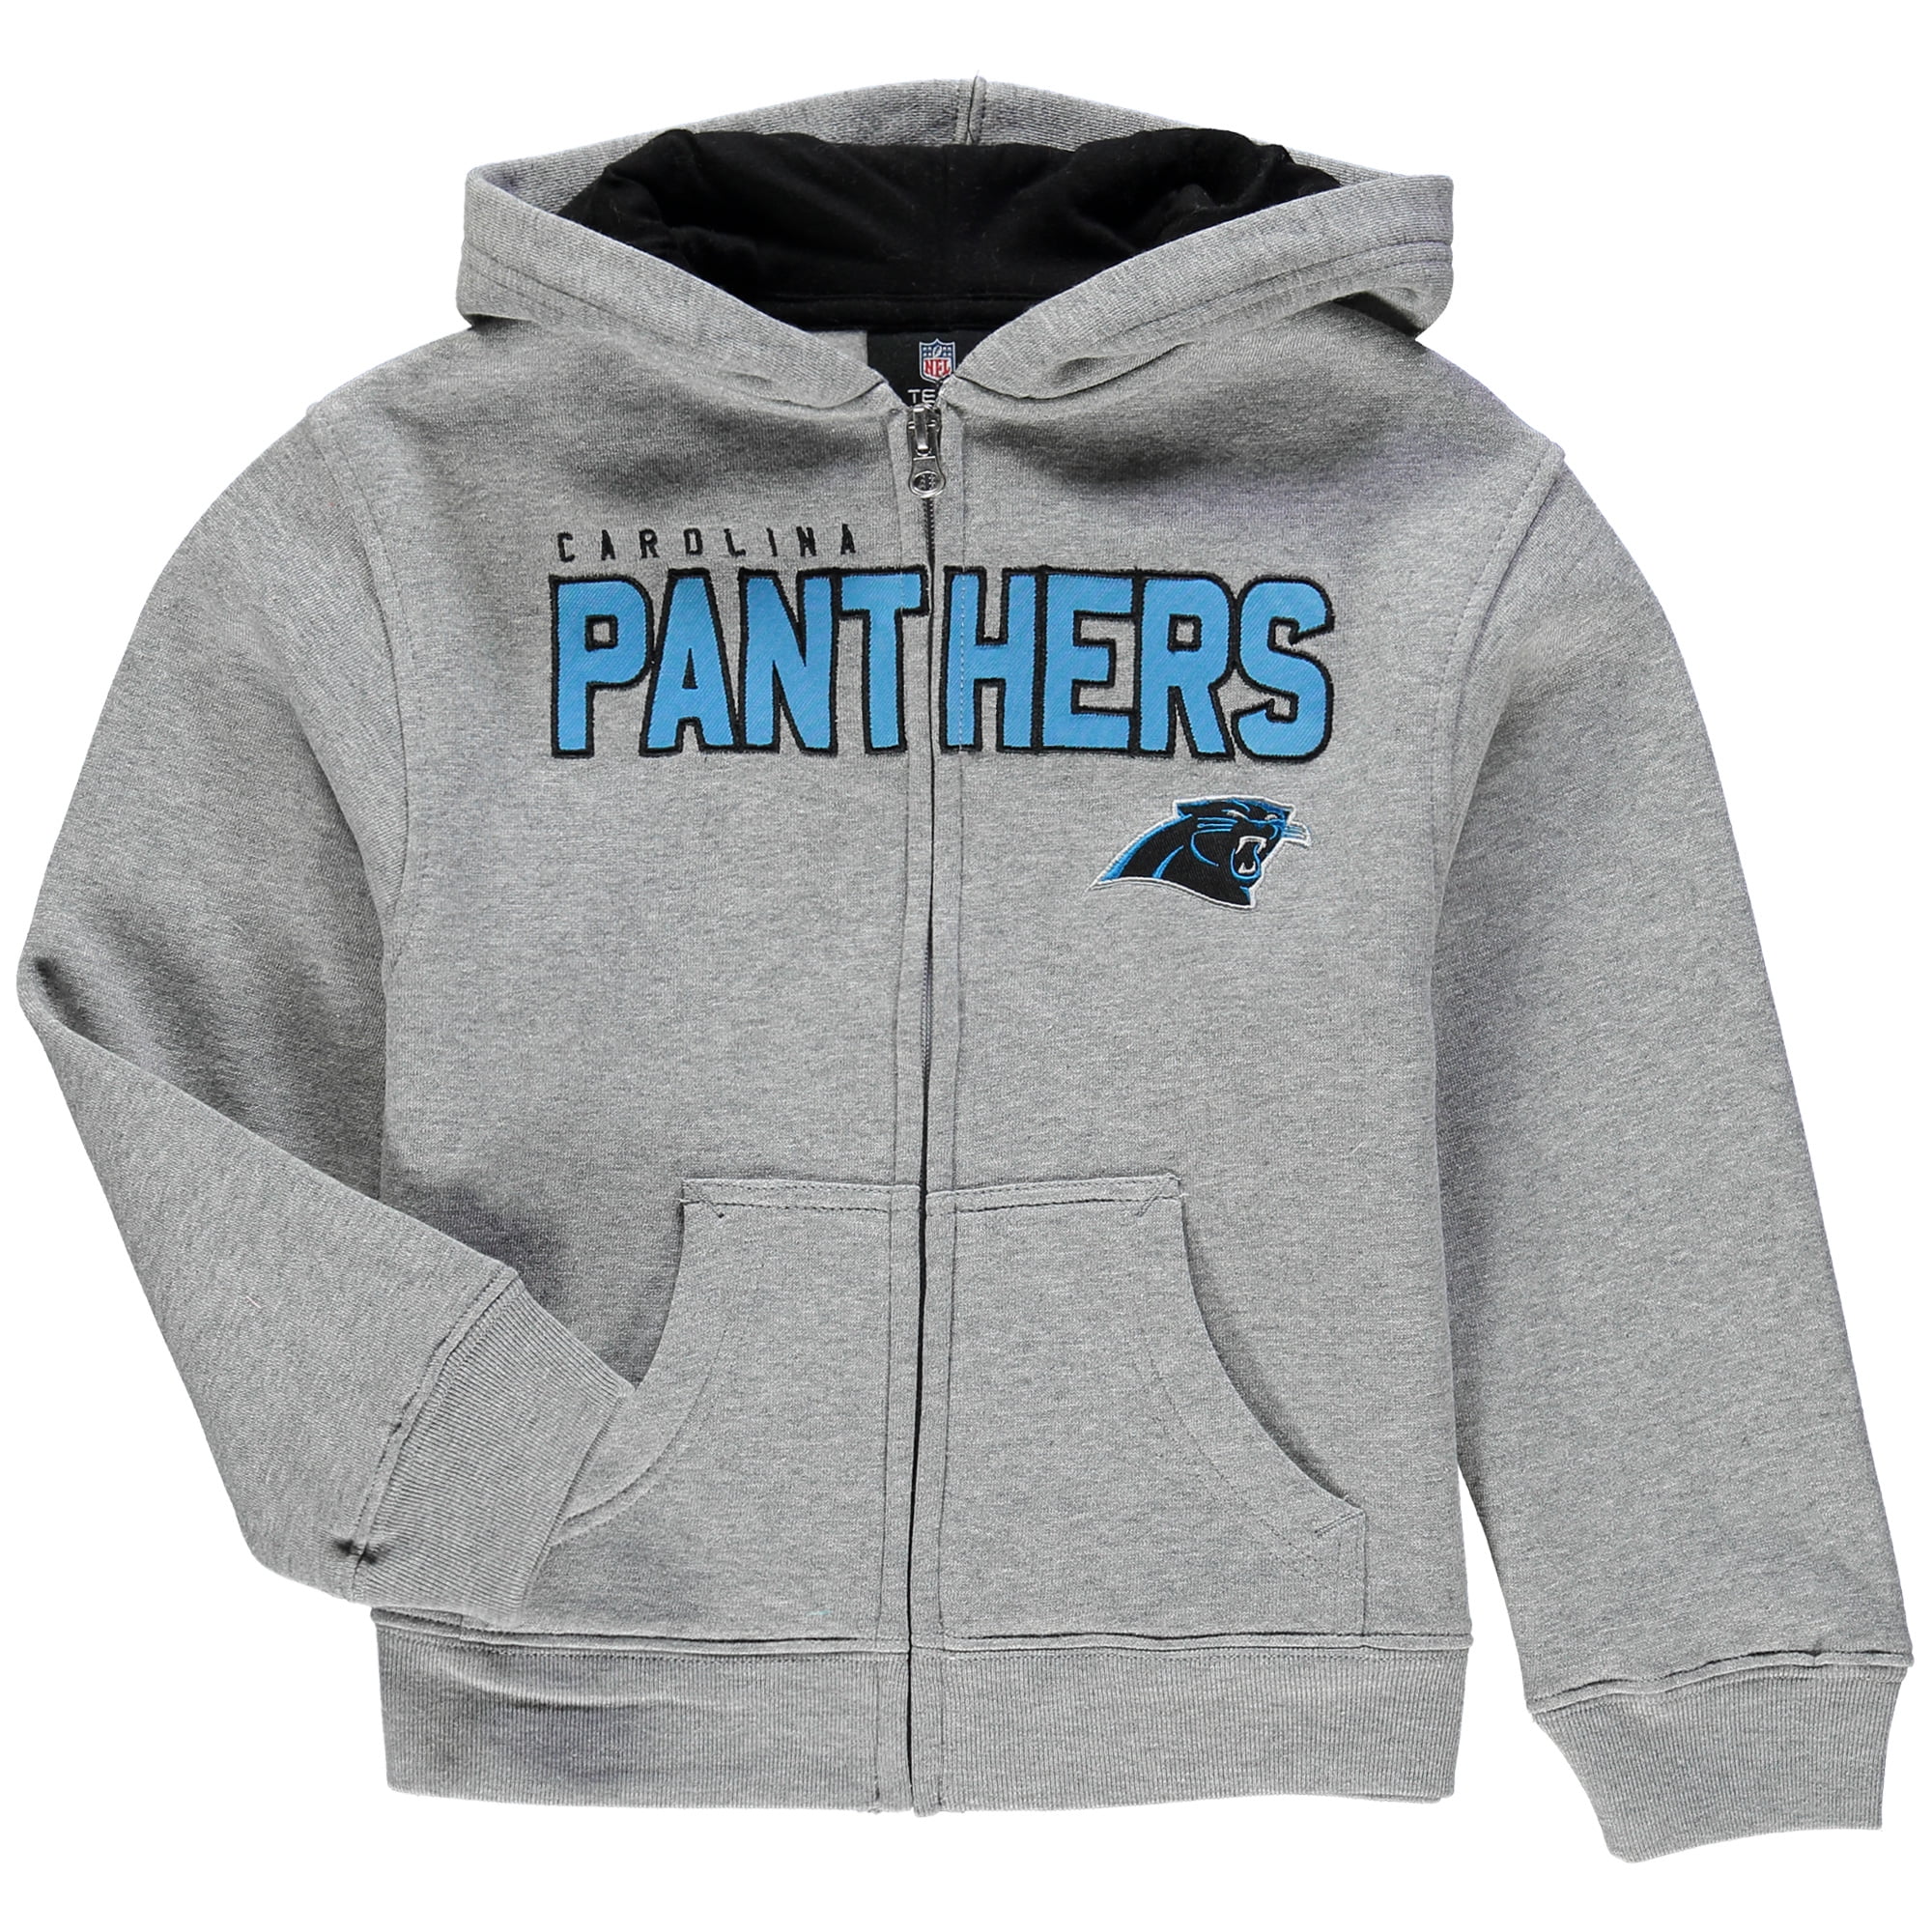 panthers zip hoodie